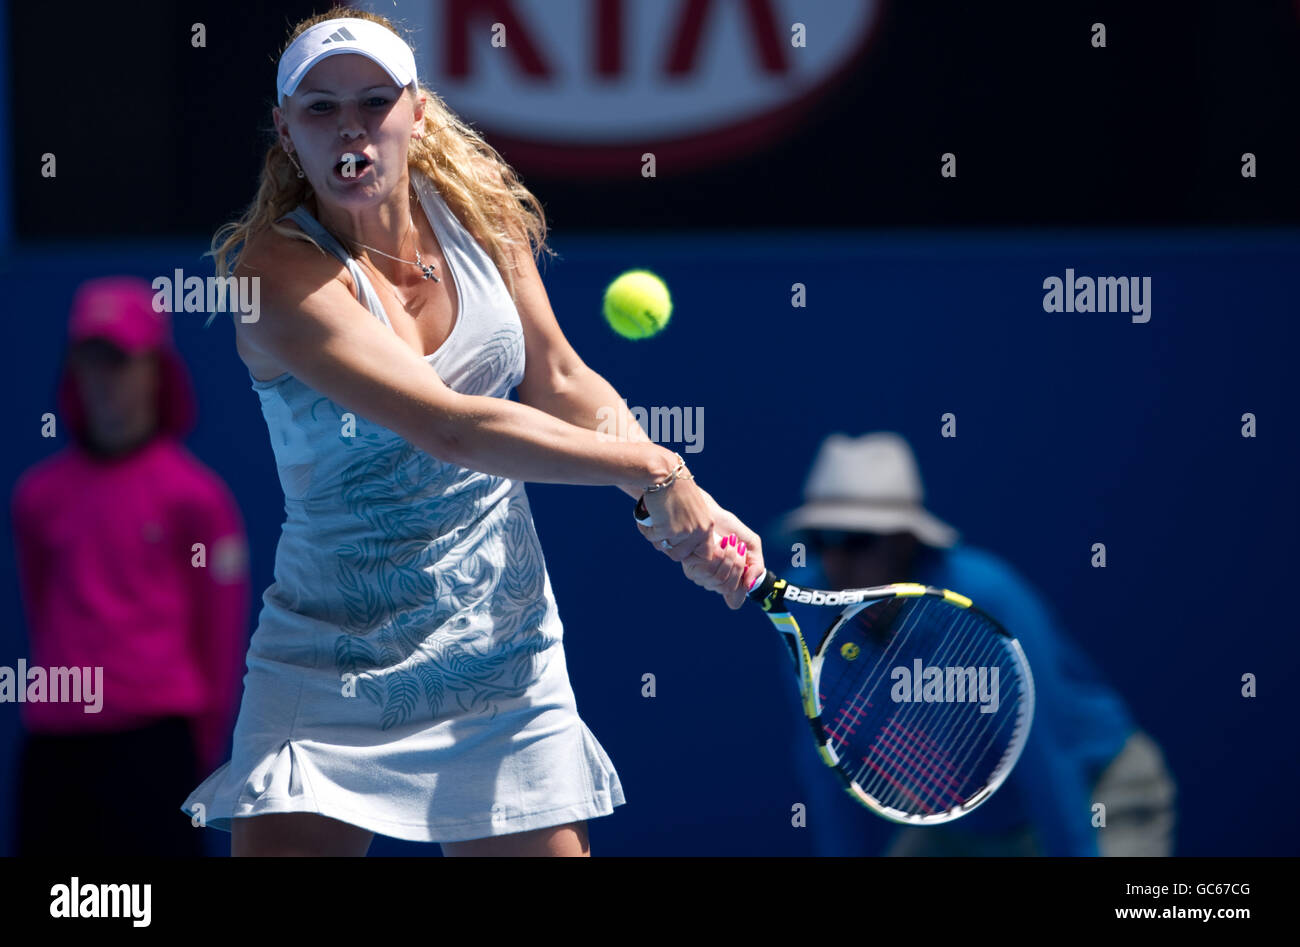 Caroline Wozniacki in action against Aleksandra Wozniak Stock Photo - Alamy